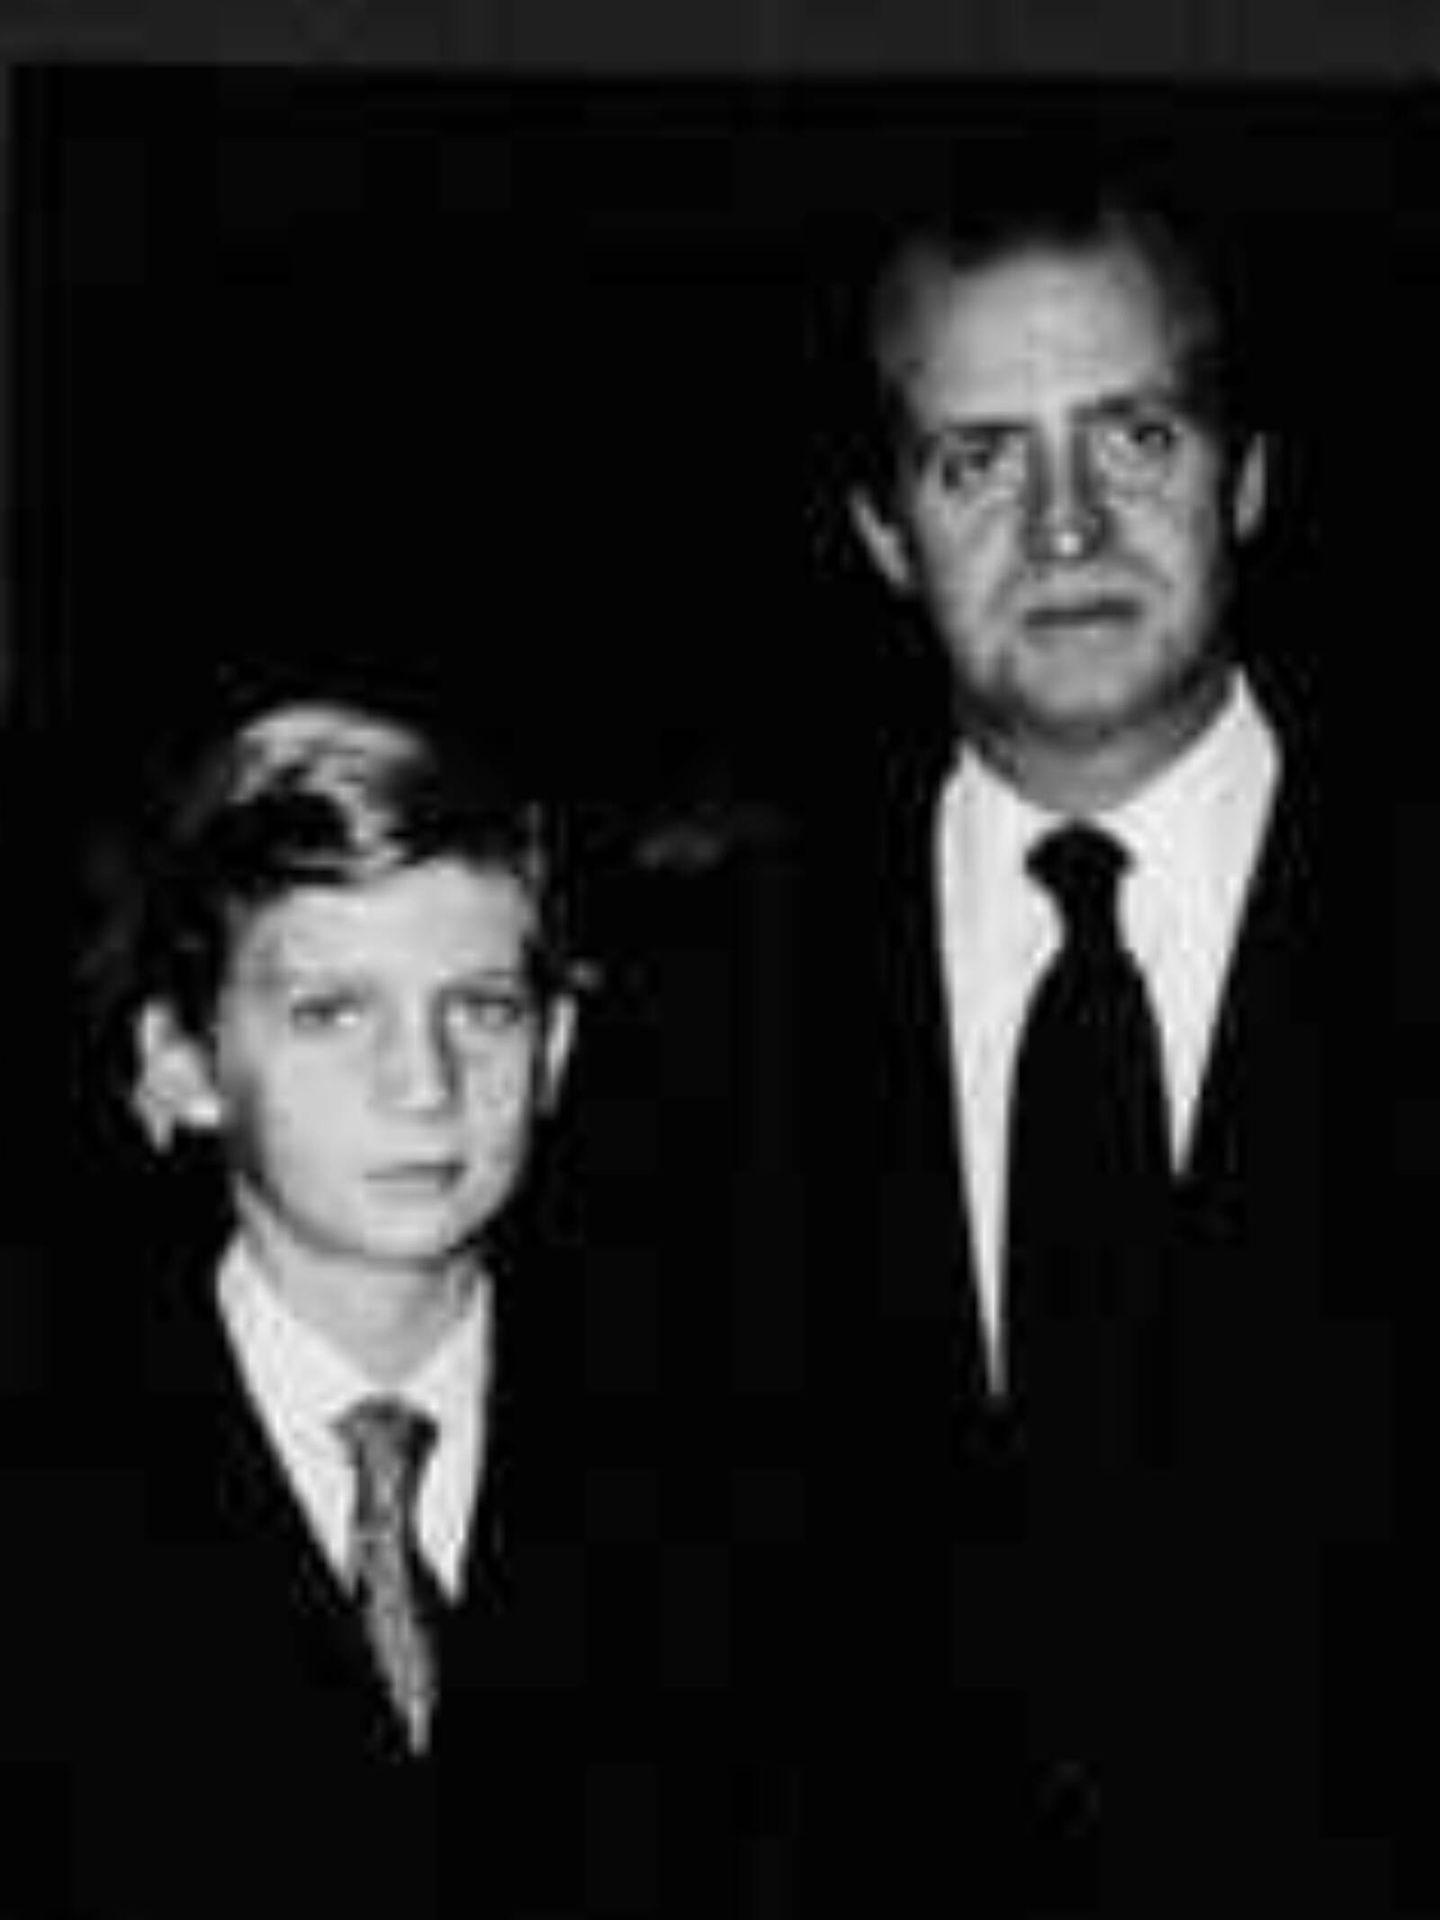 El rey Felipe VI, de adolescente en el acta fundacional de los (entonces) Premios Príncipe de Asturias en 1980 junto a Juan Carlos I. (Cortesía/FPA)